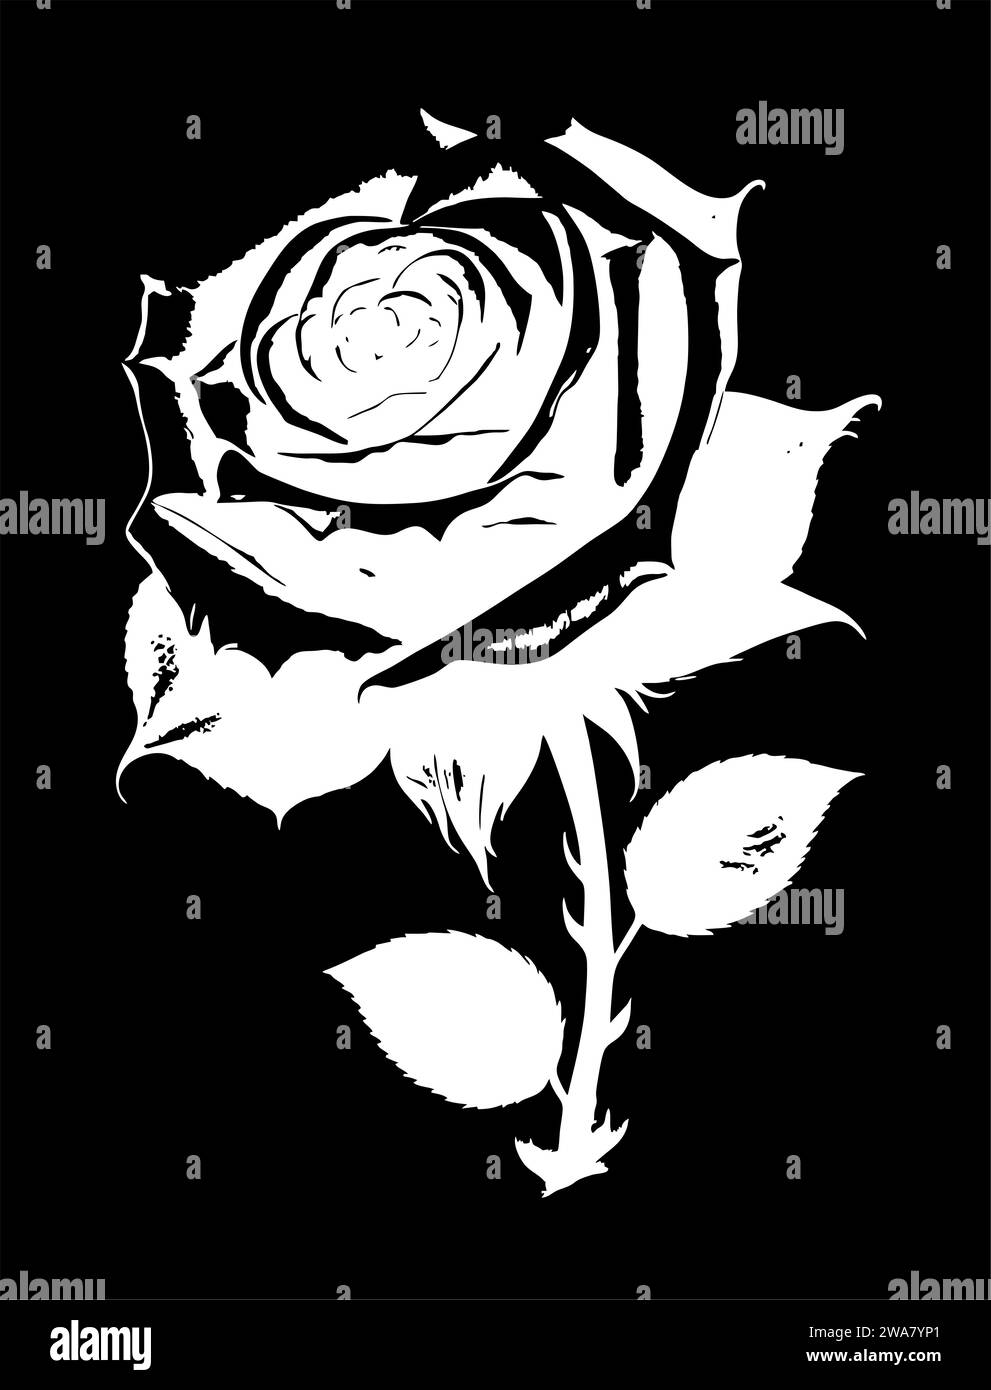 disegno lineare grafico bianco di un ramo di fiori su sfondo nero, disegno Foto Stock